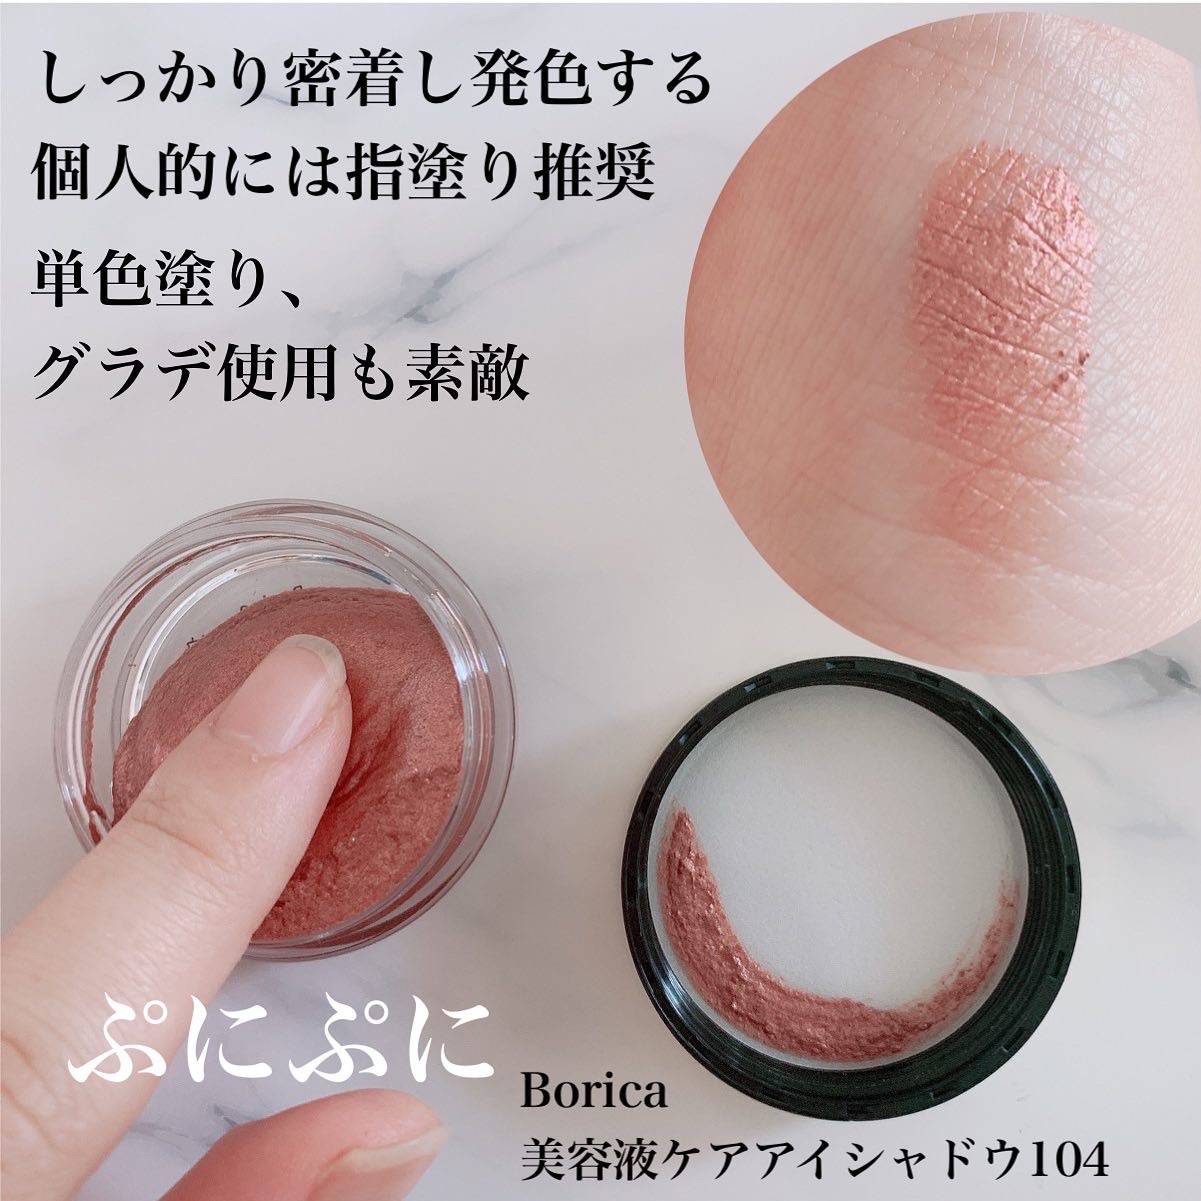 Borica(ボリカ) 美容液ケアアイシャドウの良い点・メリットに関するまみやこさんの口コミ画像1